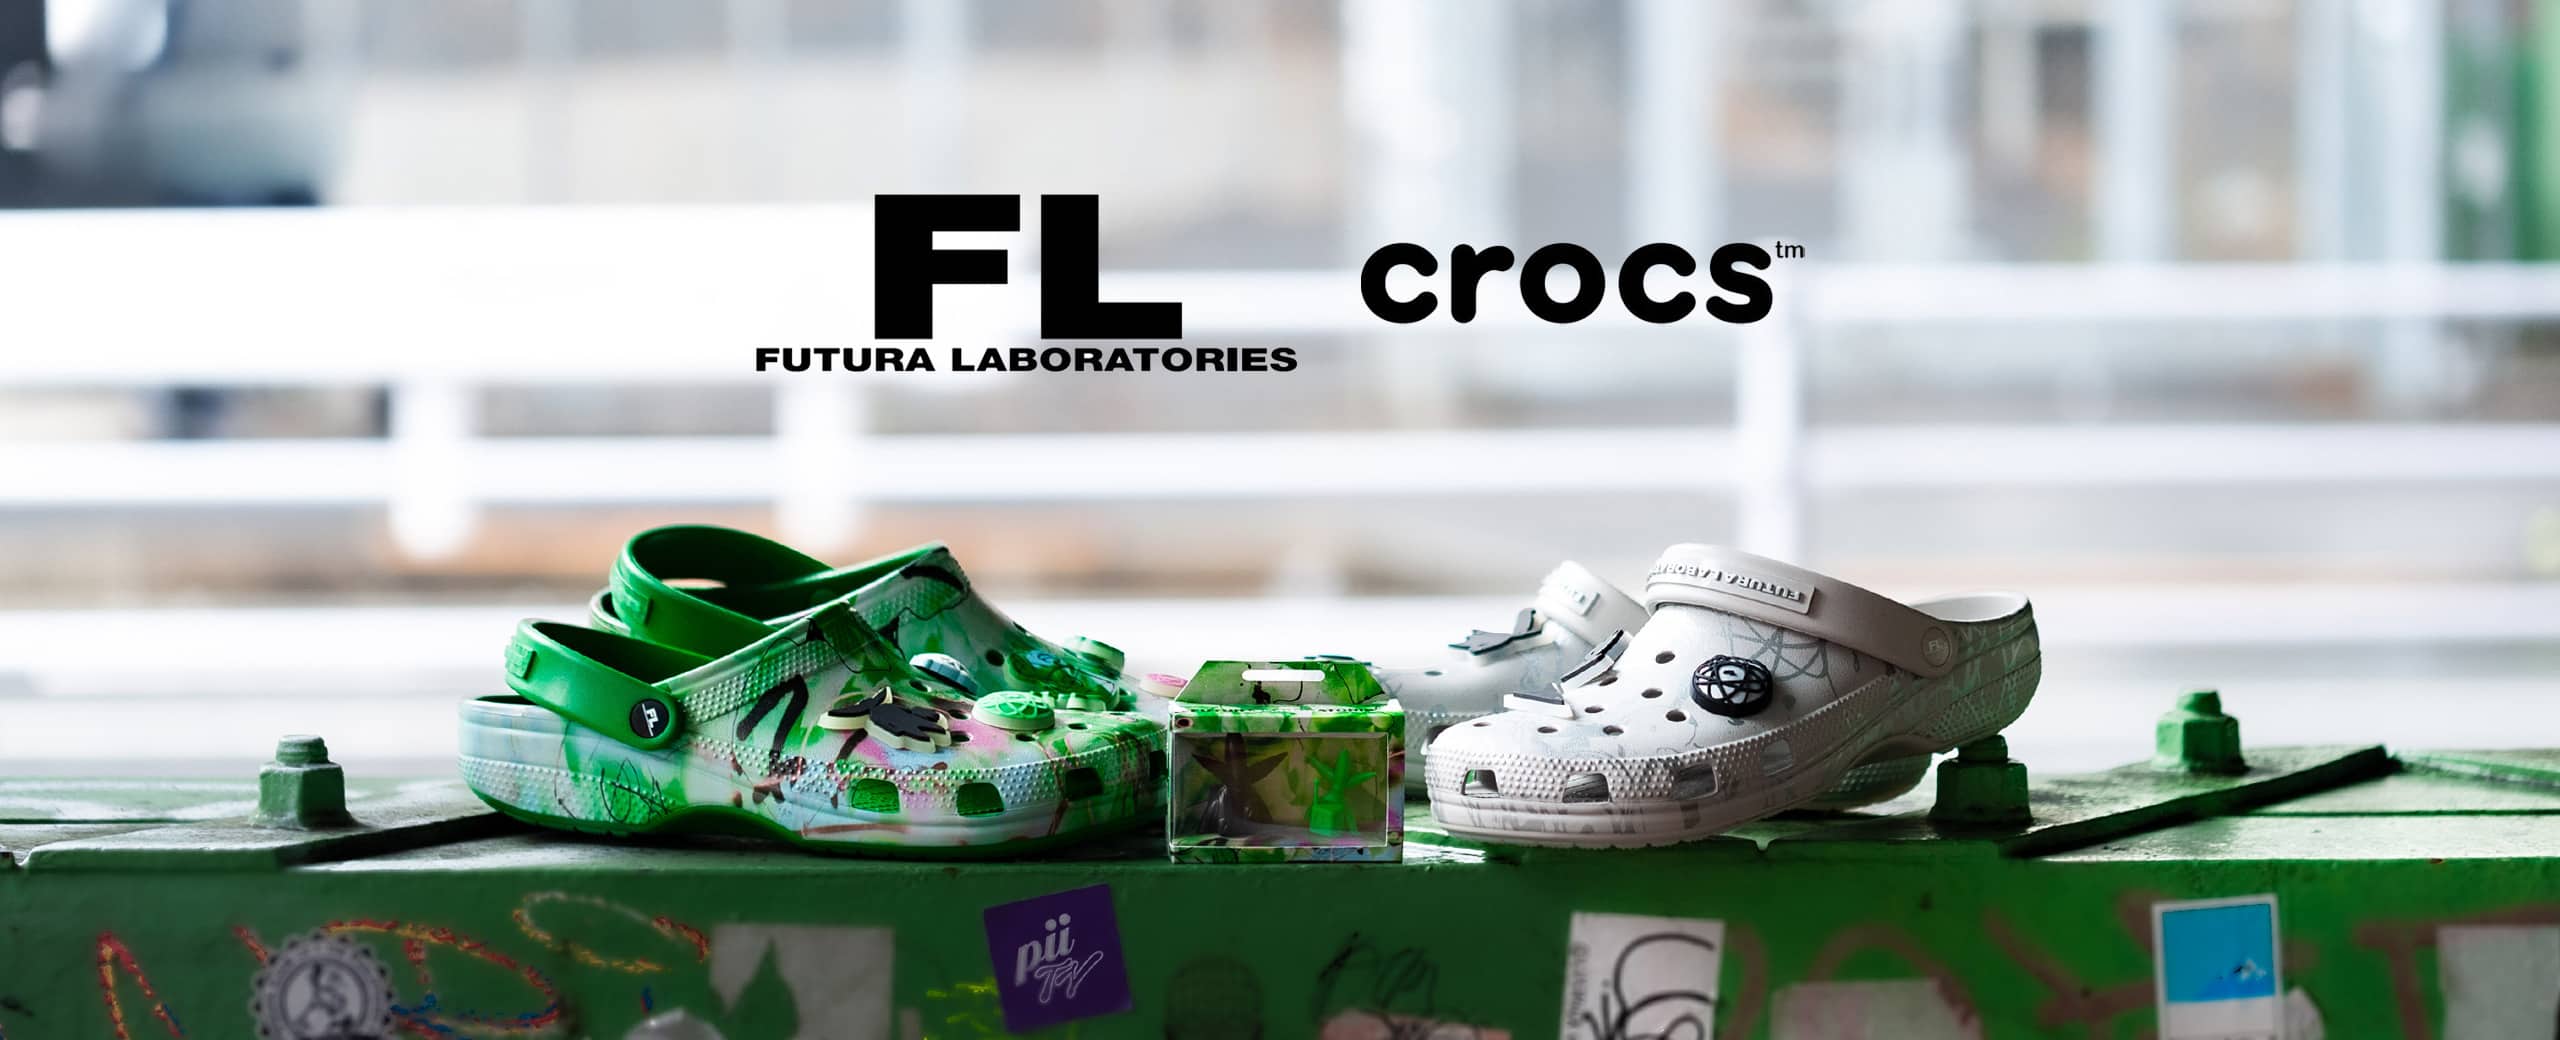 FUTURA X crocs